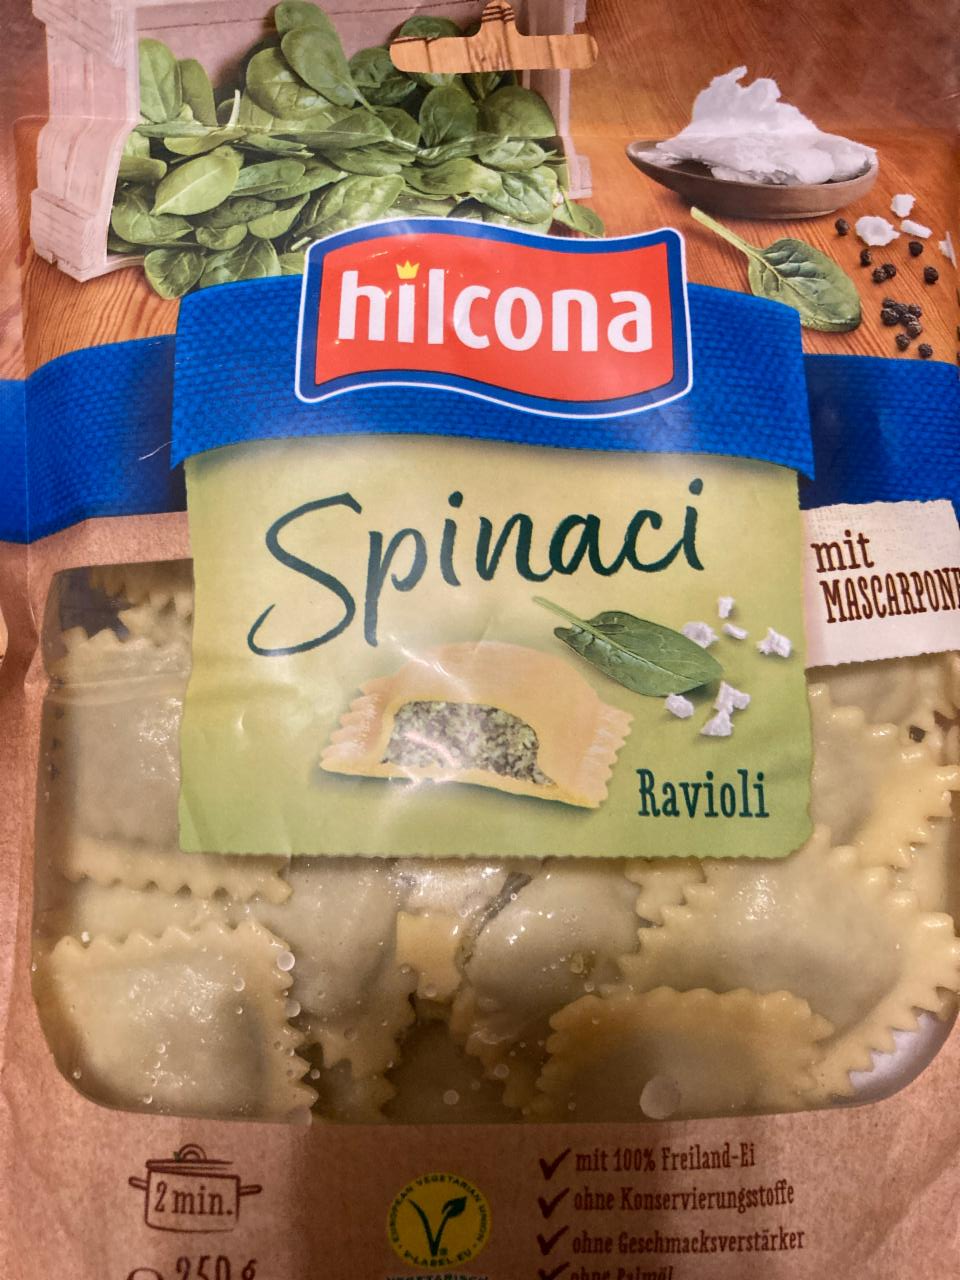 Fotografie - Spinaci ravioli mit mascarpone Hilcona